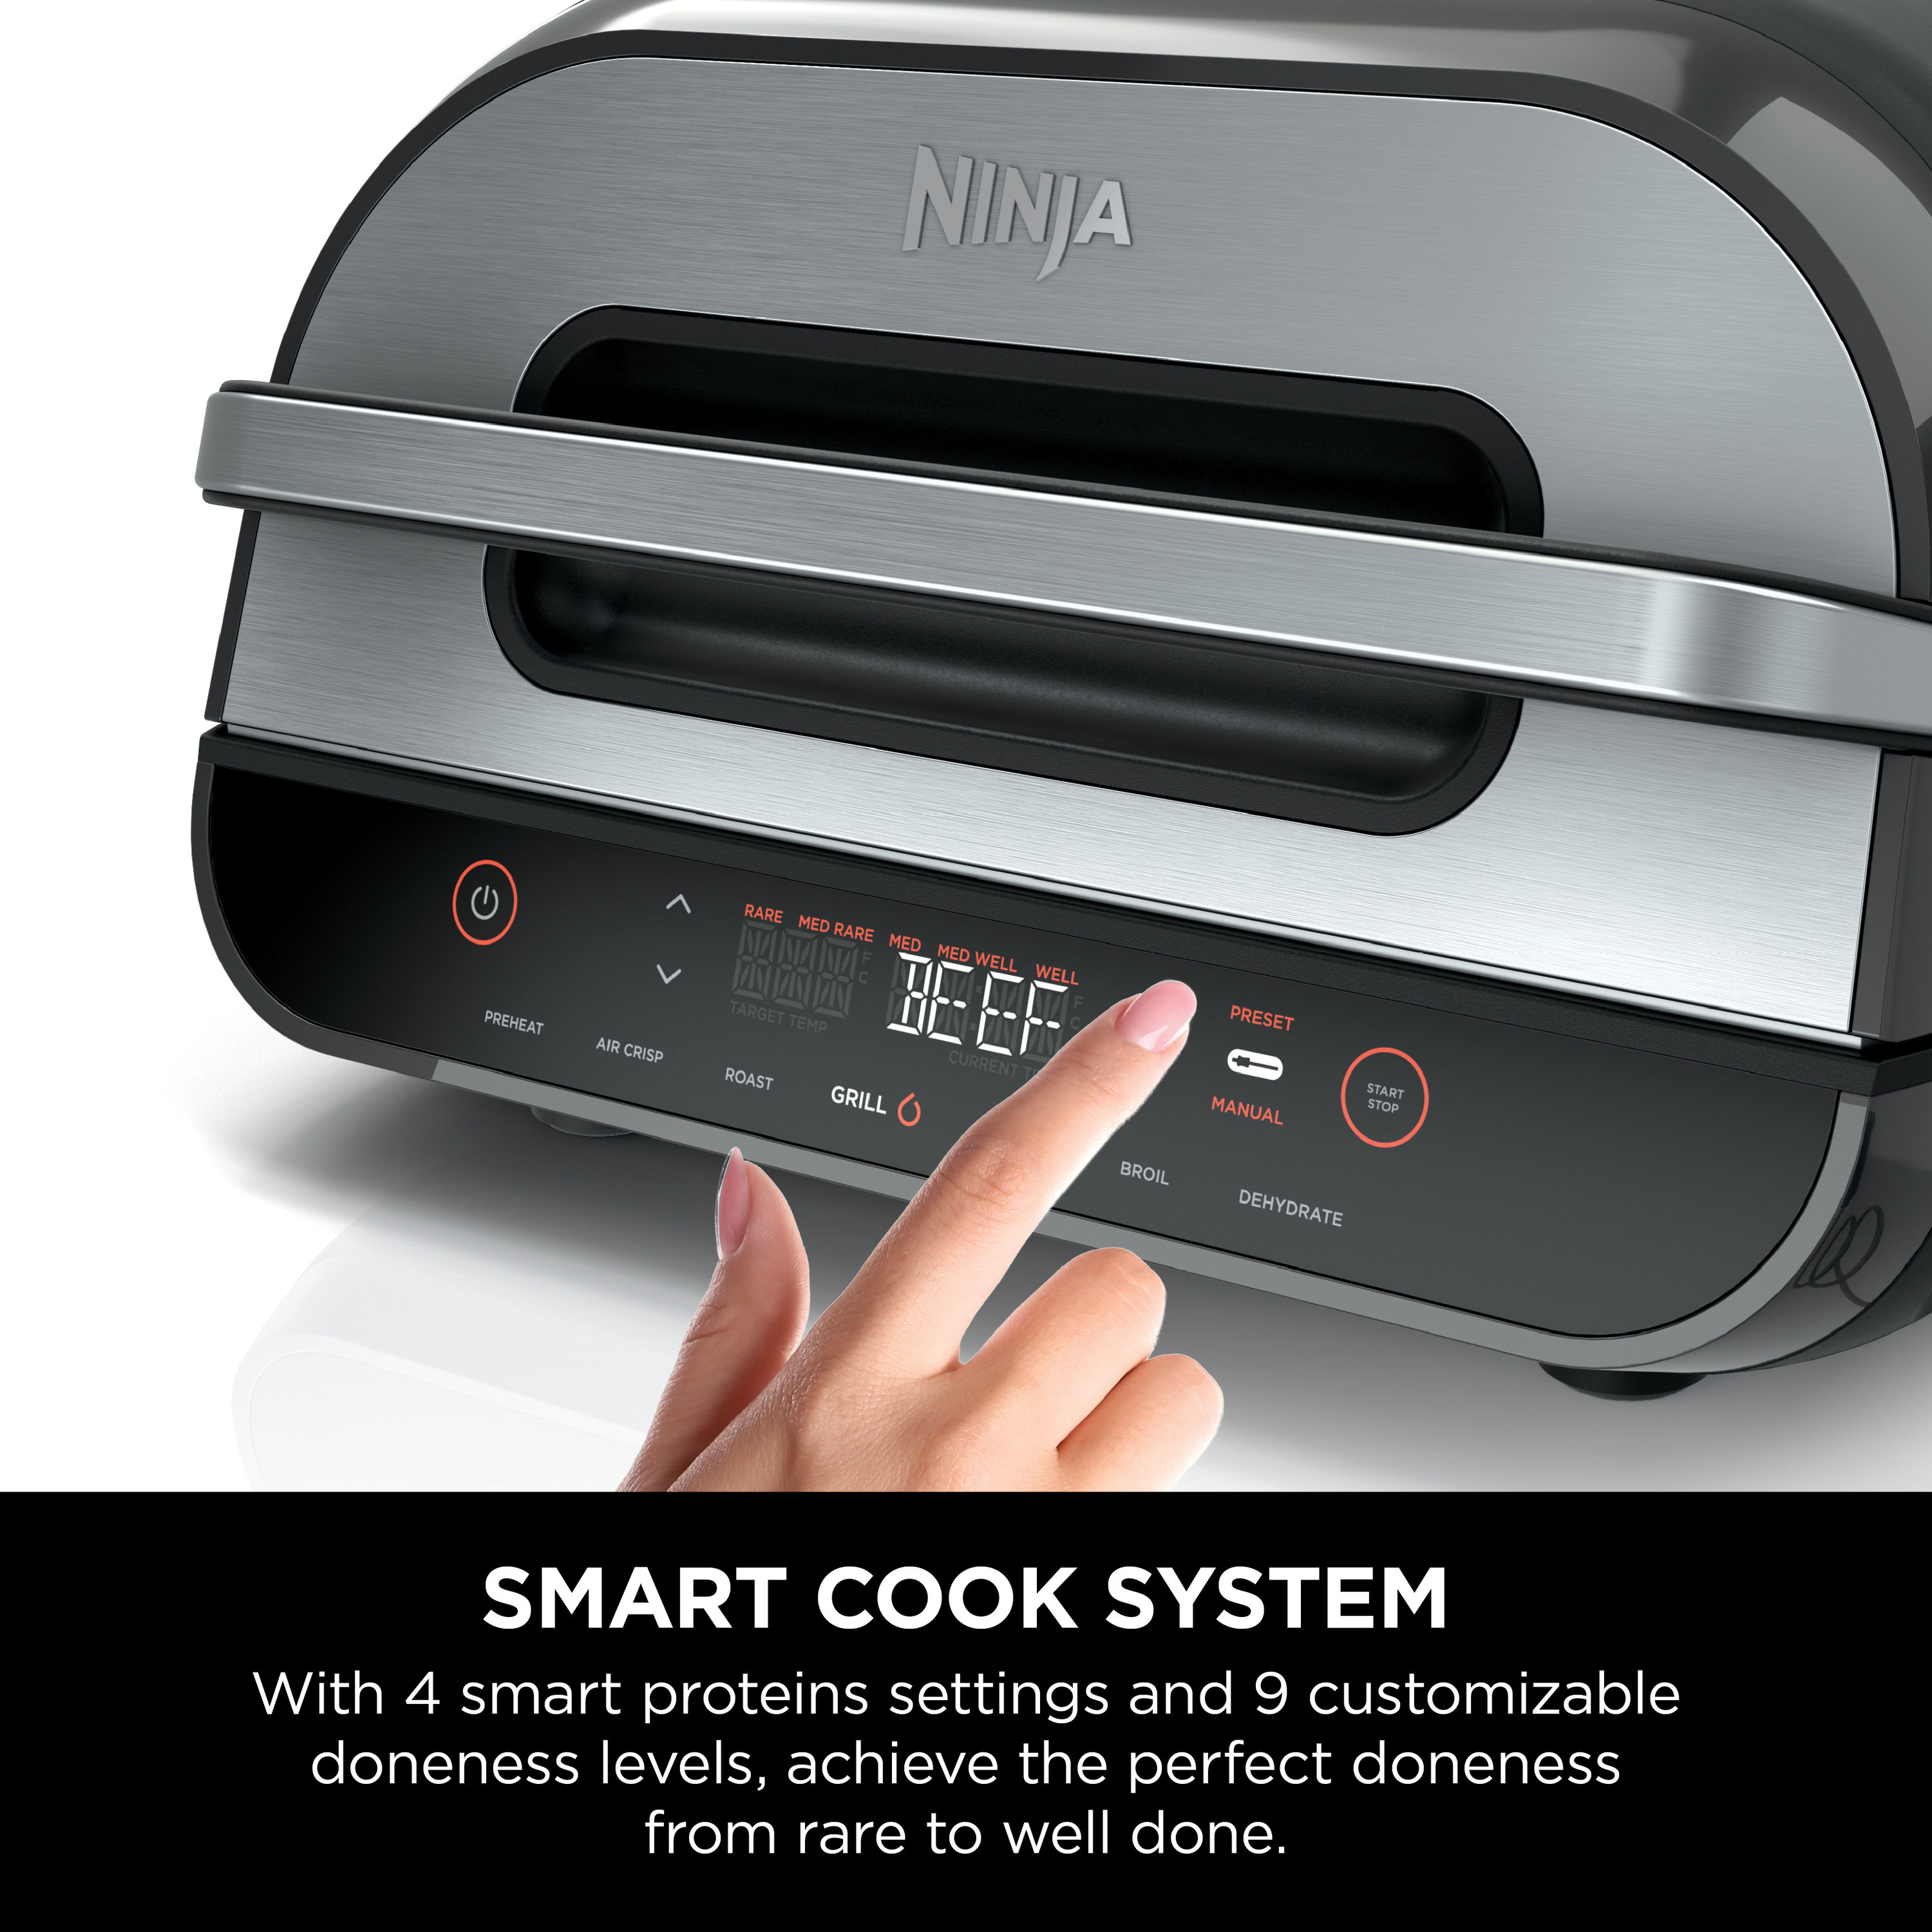 Ninja Foodi Smart XL Grill